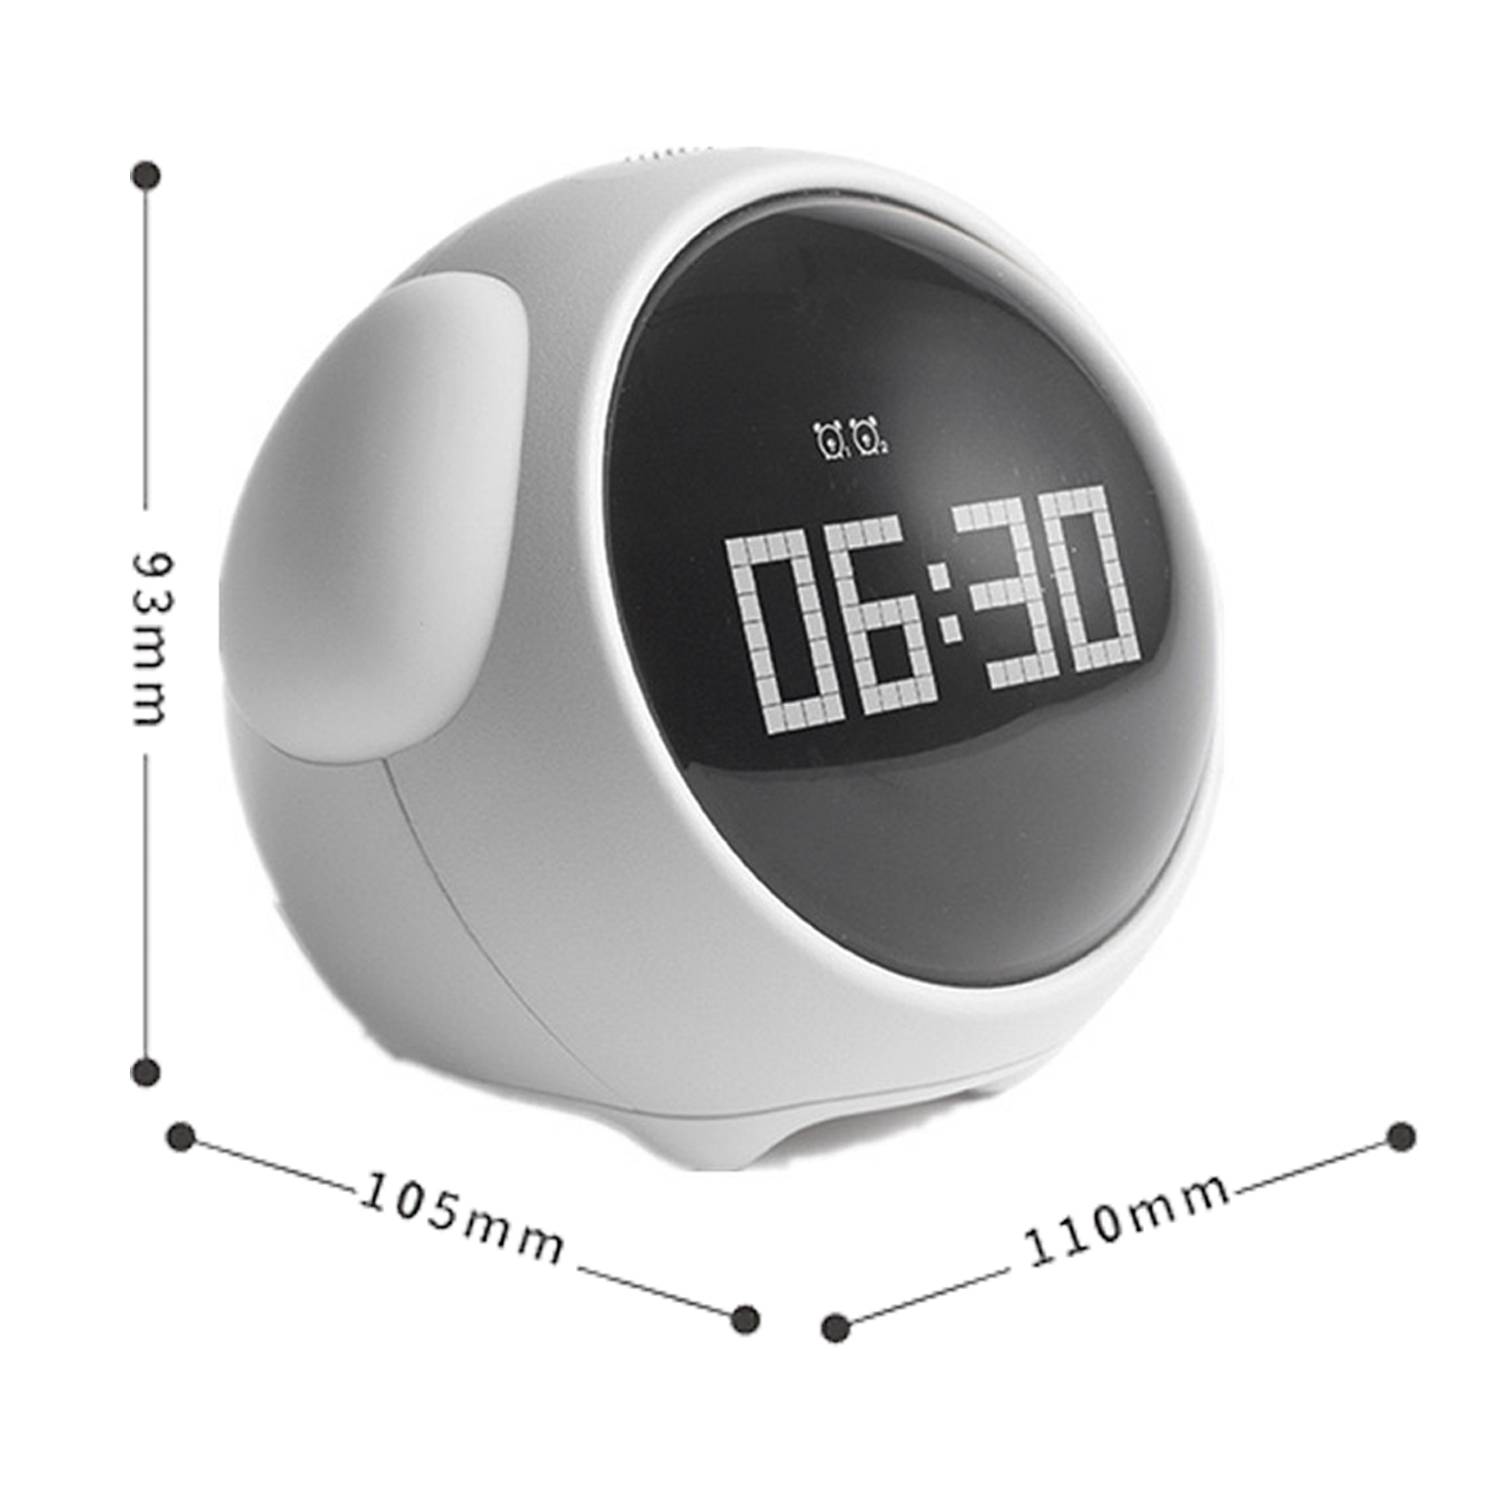 Reloj despertador con lampara Digital Para Escritorio Recargable Q AND Q